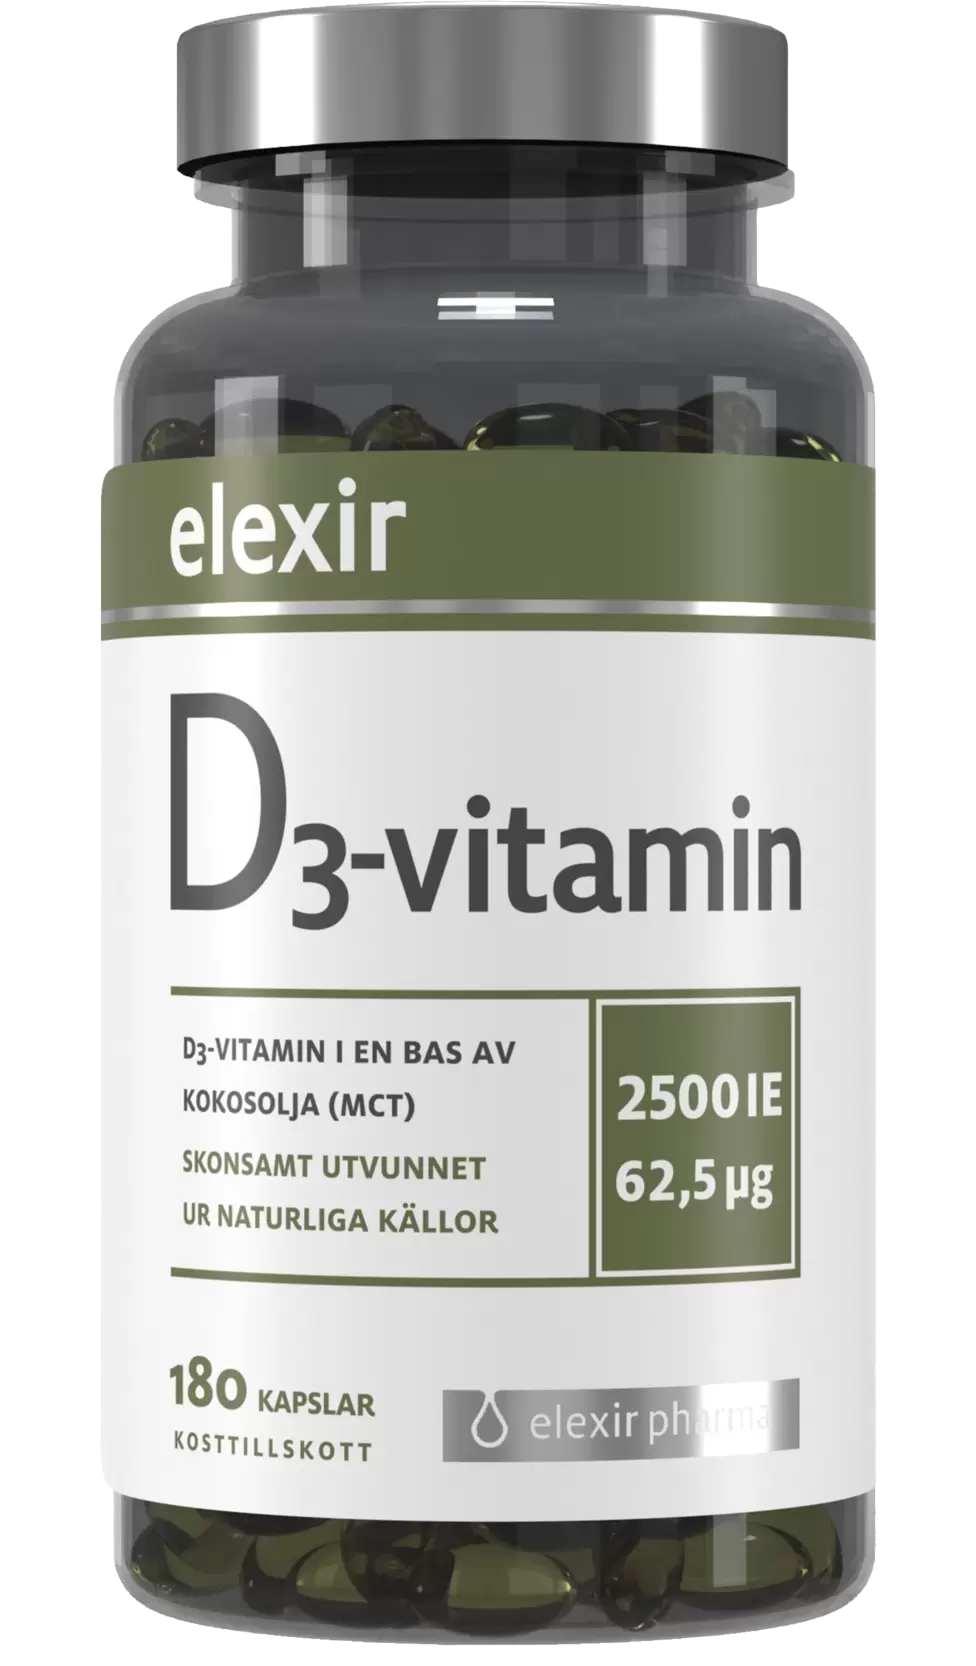 Elexir D3 Vitamin 2500IE 180 kapslar för 111,2 kr på Apotek Hjärtat